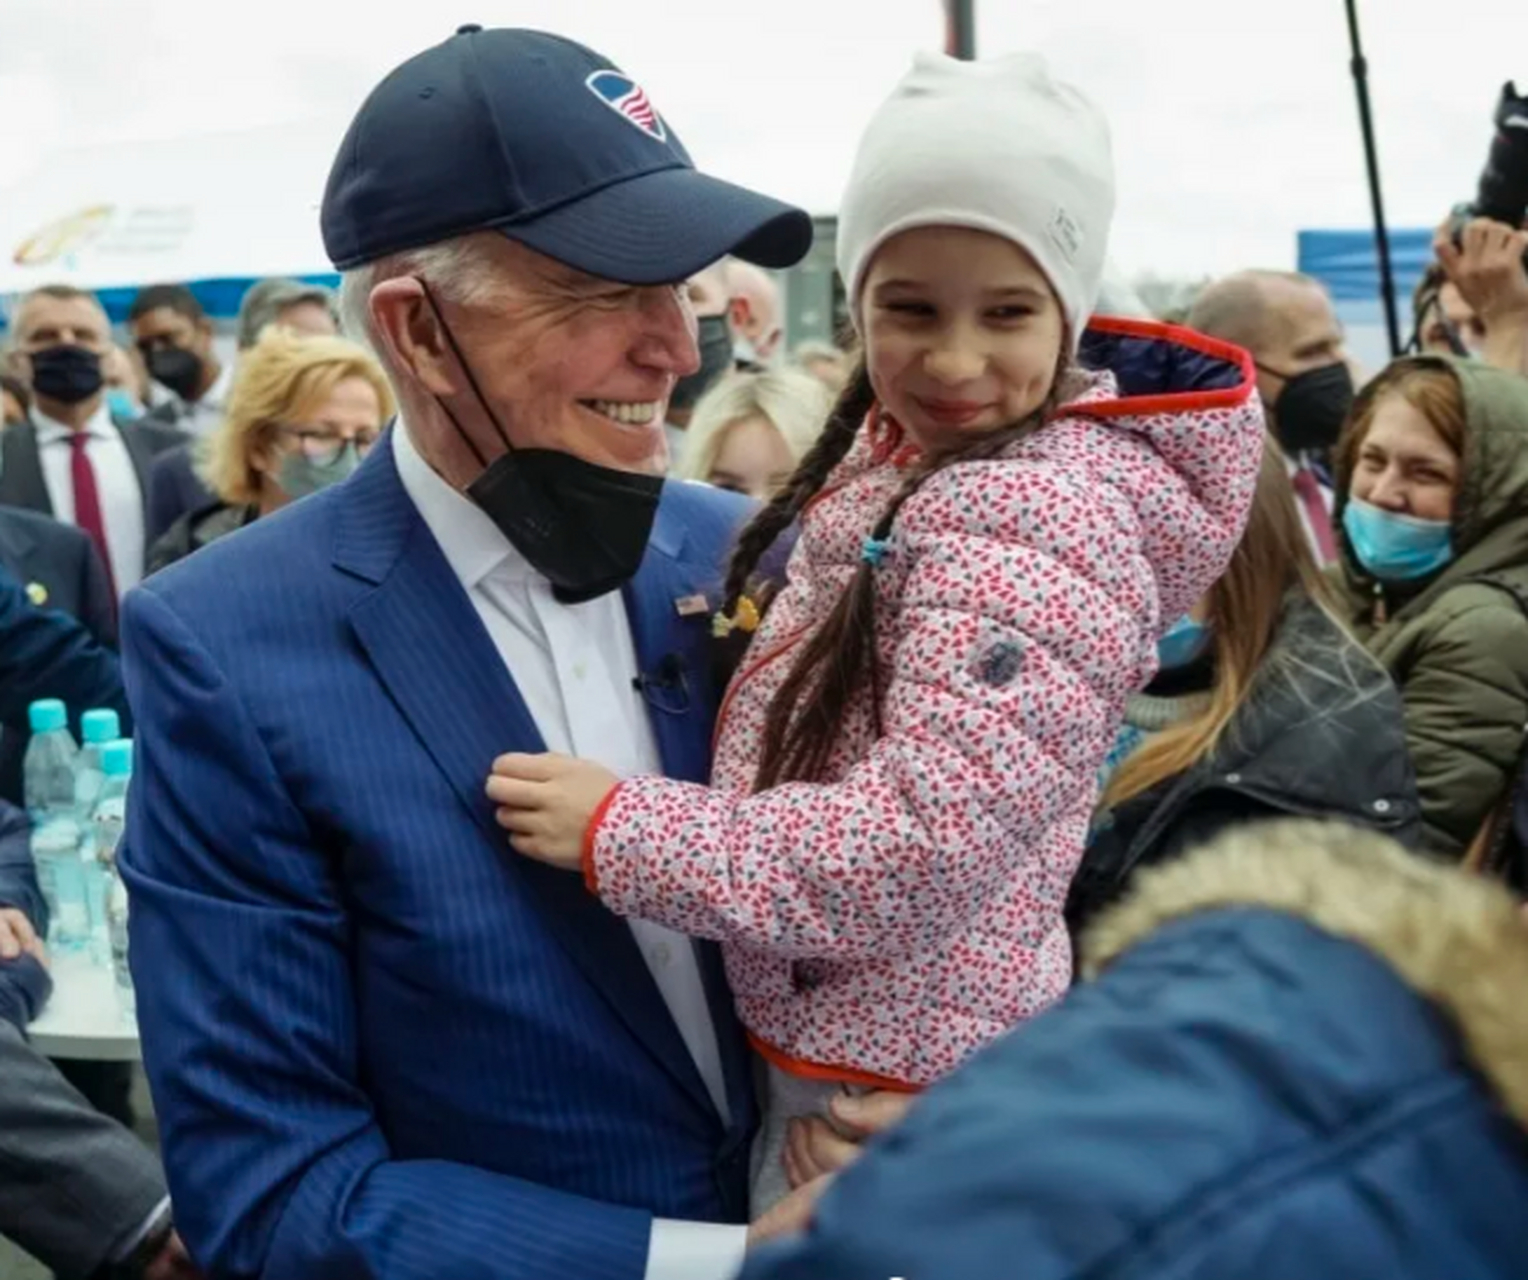 拜登访问波兰时,他抱起了一名乌克兰小女孩